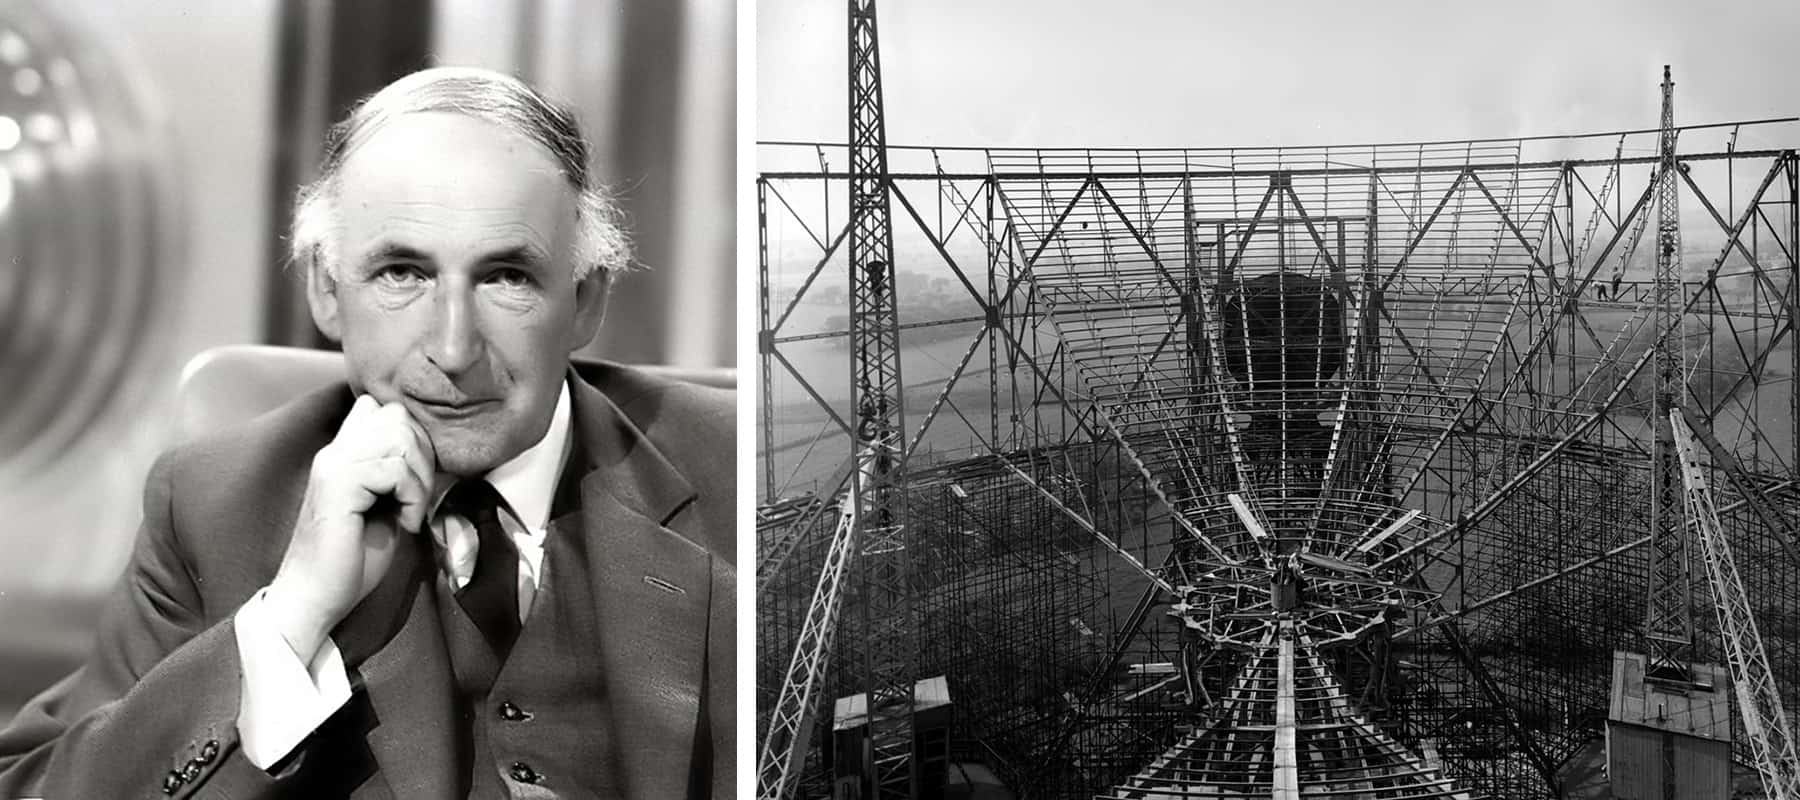 دو سیاہ اور سفید تصاویر: سوٹ میں ایک آدمی اور زیر تعمیر ایک بڑی دوربین